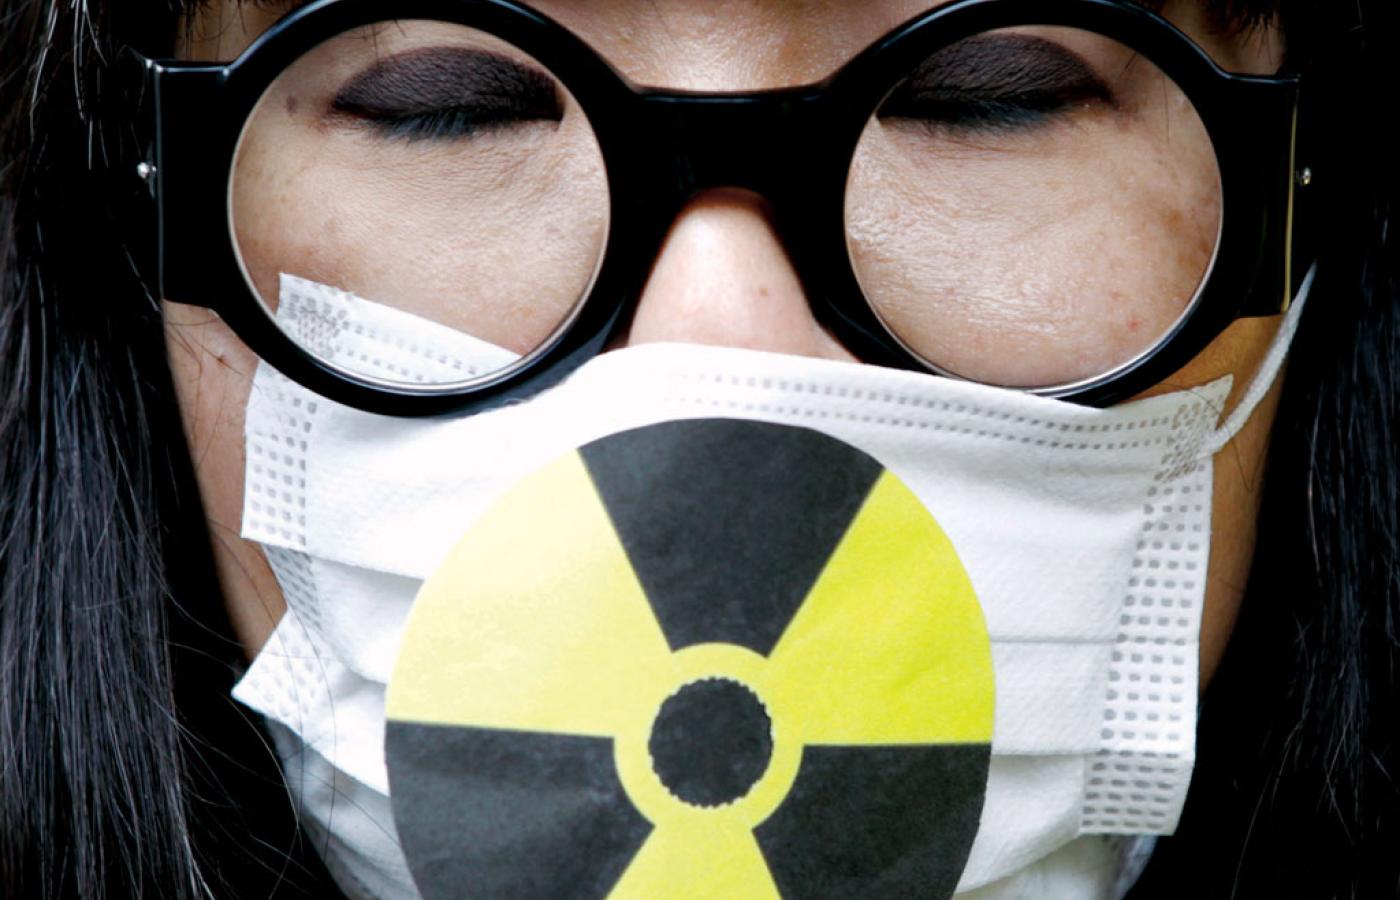 W kwestii bezpieczeństwa atomowego Japończycy przestali ufać swojemu rządowi.